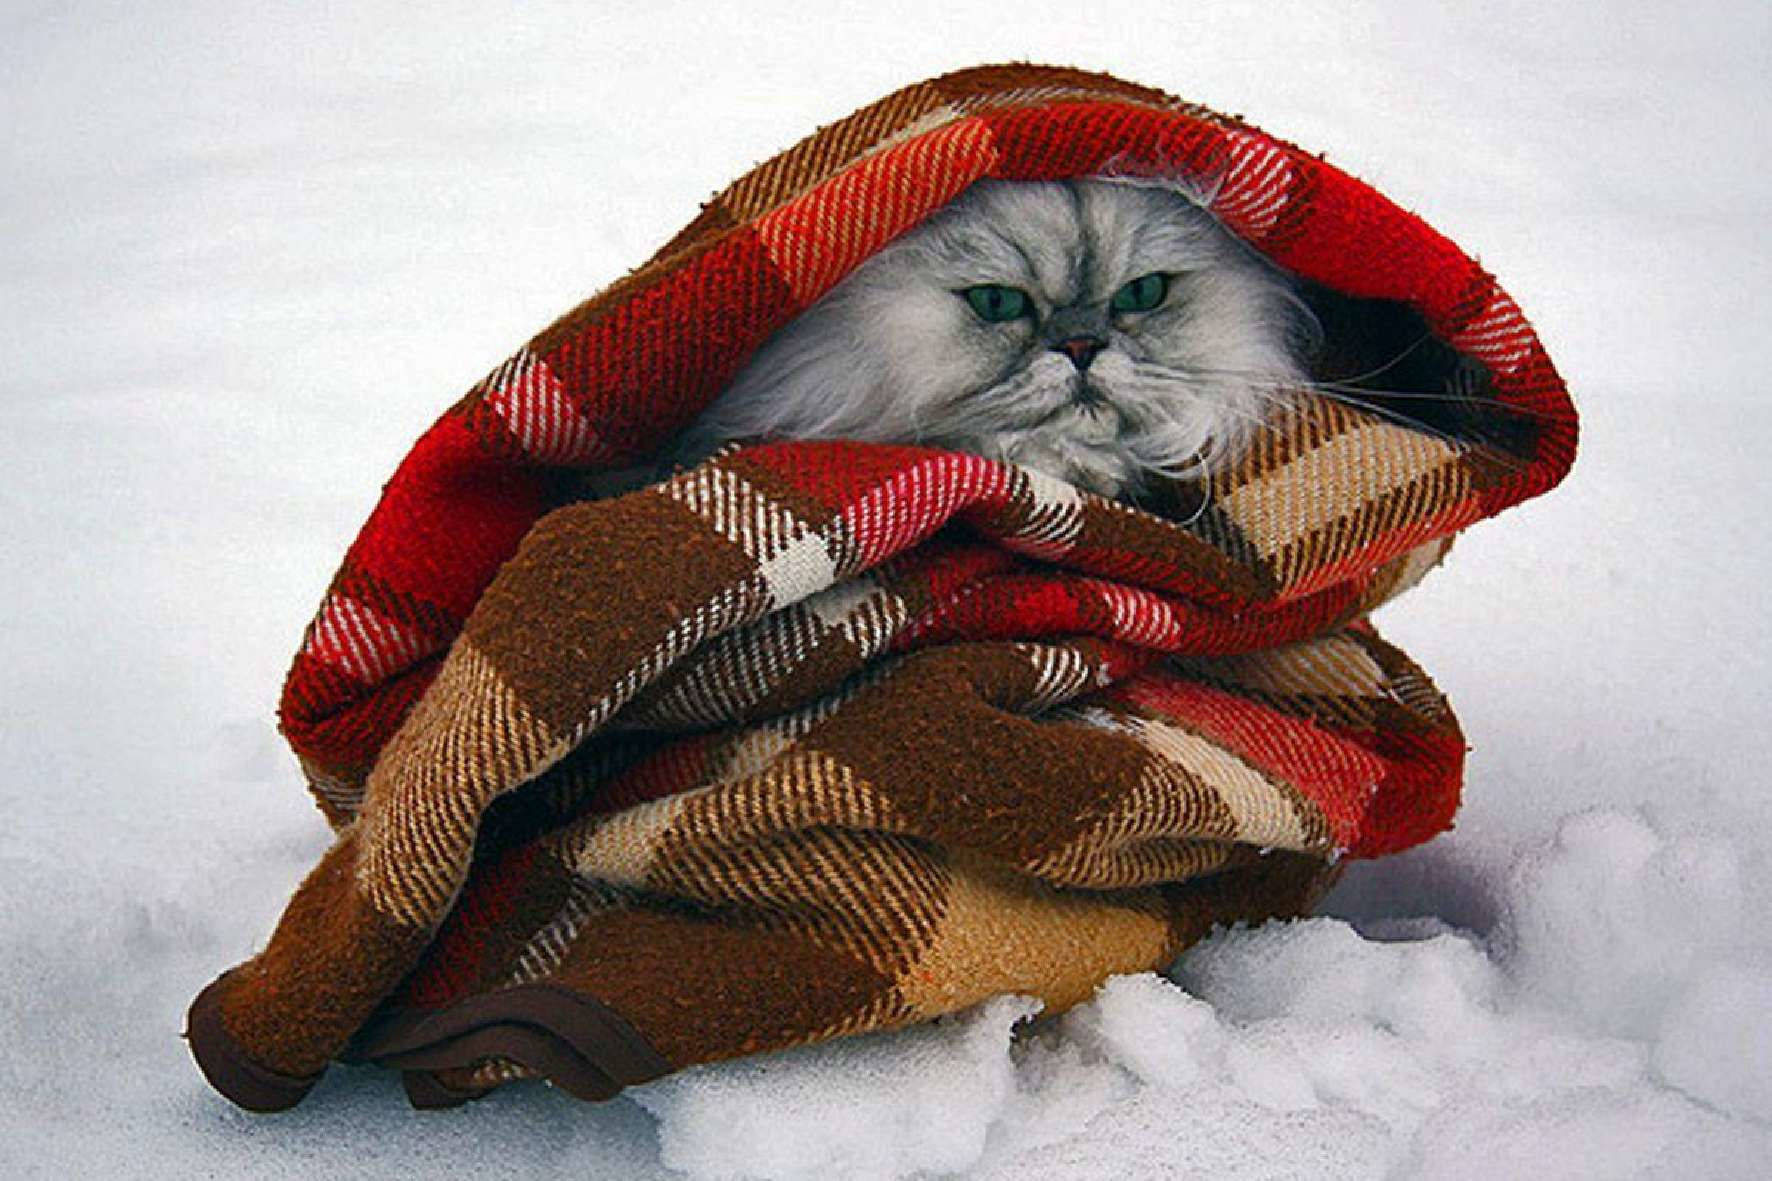 Совсем замерз. Укутанная в плед. Кот в пледе. Укутаться шарфом. Укутанный кот.